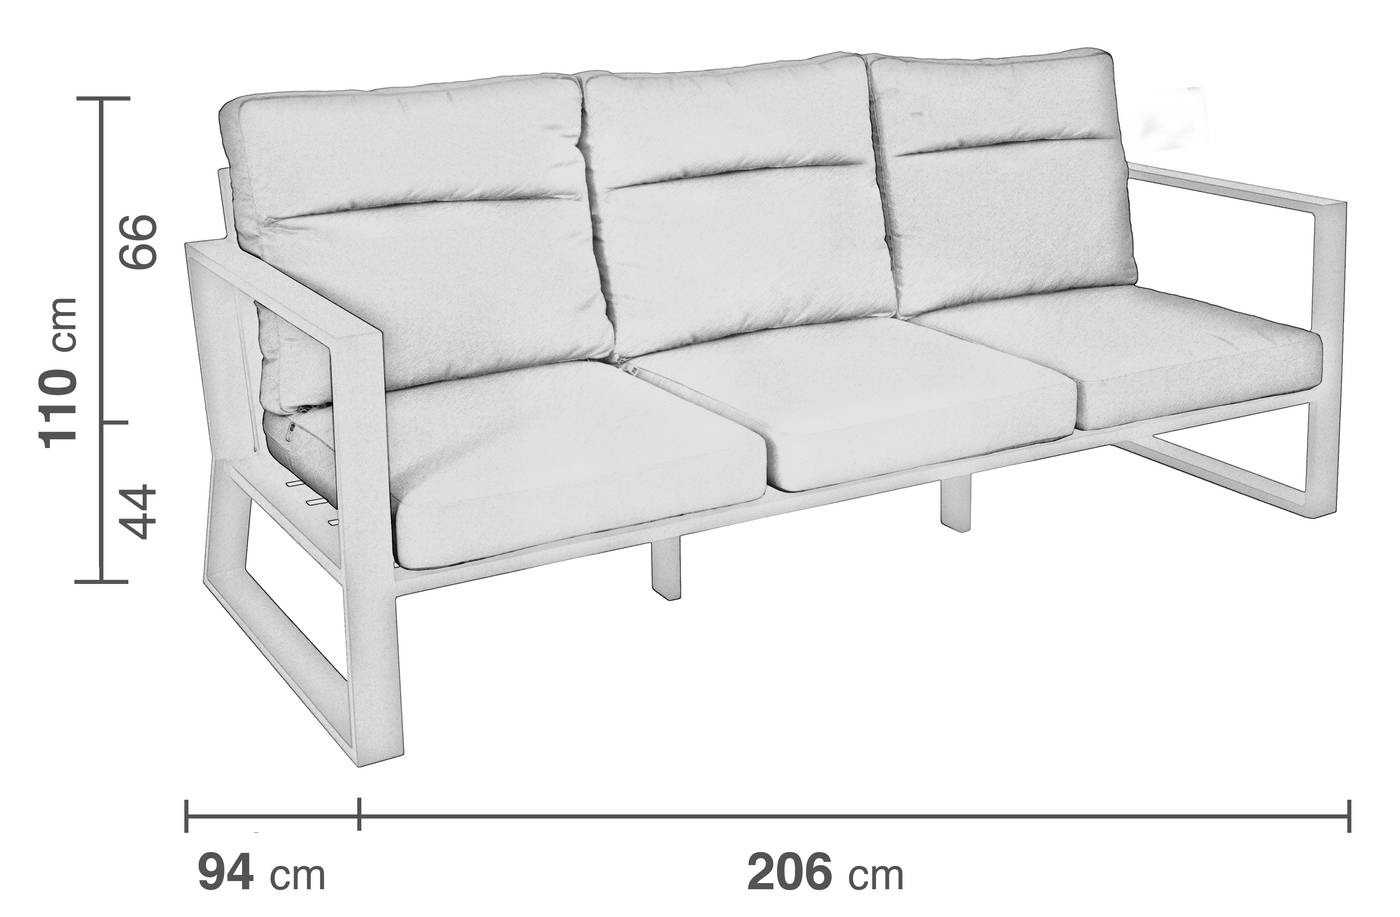 Sofá Aluminio Bolonia-39 - Sofá relax lujo 3 plazas, con respaldos reclinables. Fabricado de aluminio en color blanco, antracita, champagne, plata o marrón.